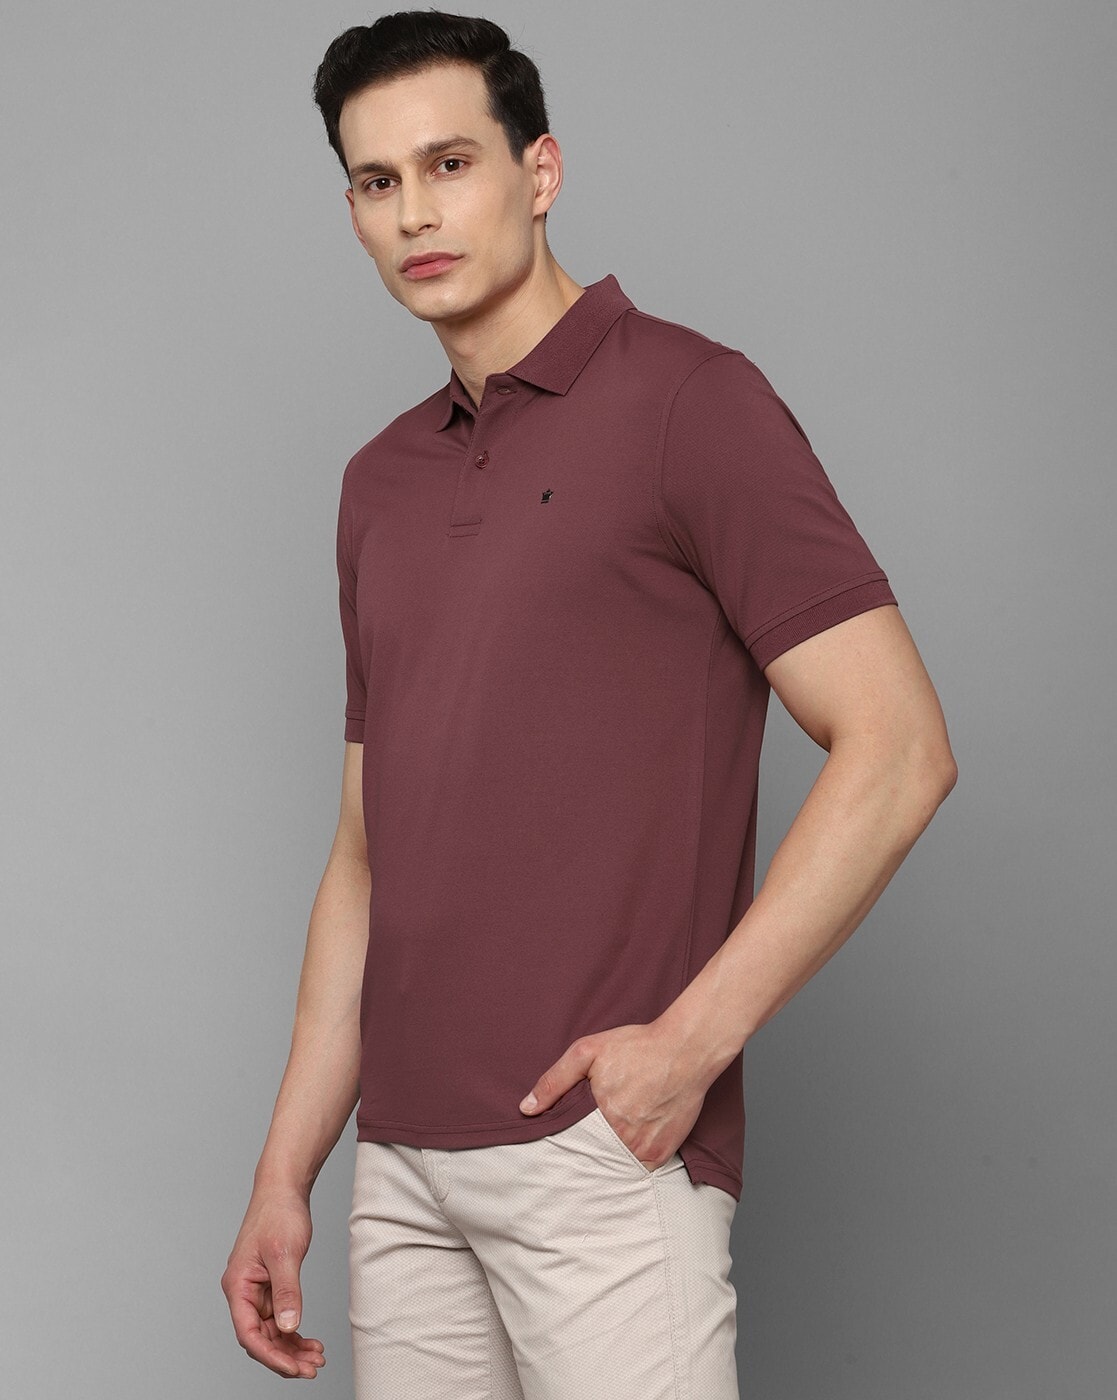 Louis Philippe cotton maroon plain polo t shirt - G3-MTS16309 